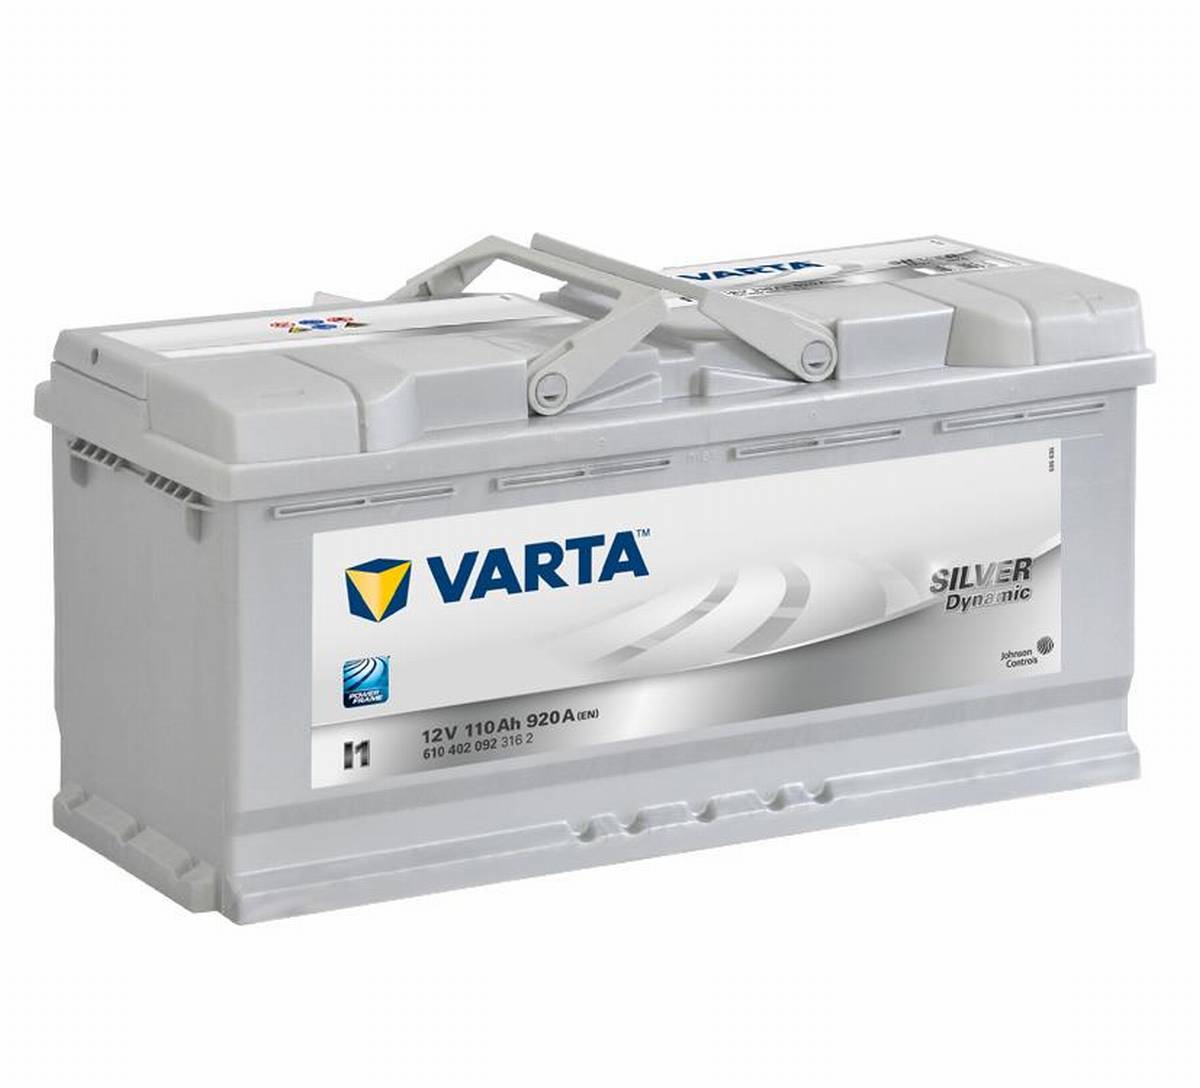 VARTA I1 Silver Dynamic 12V 110Ah 920A Batteria per auto 610 402 092